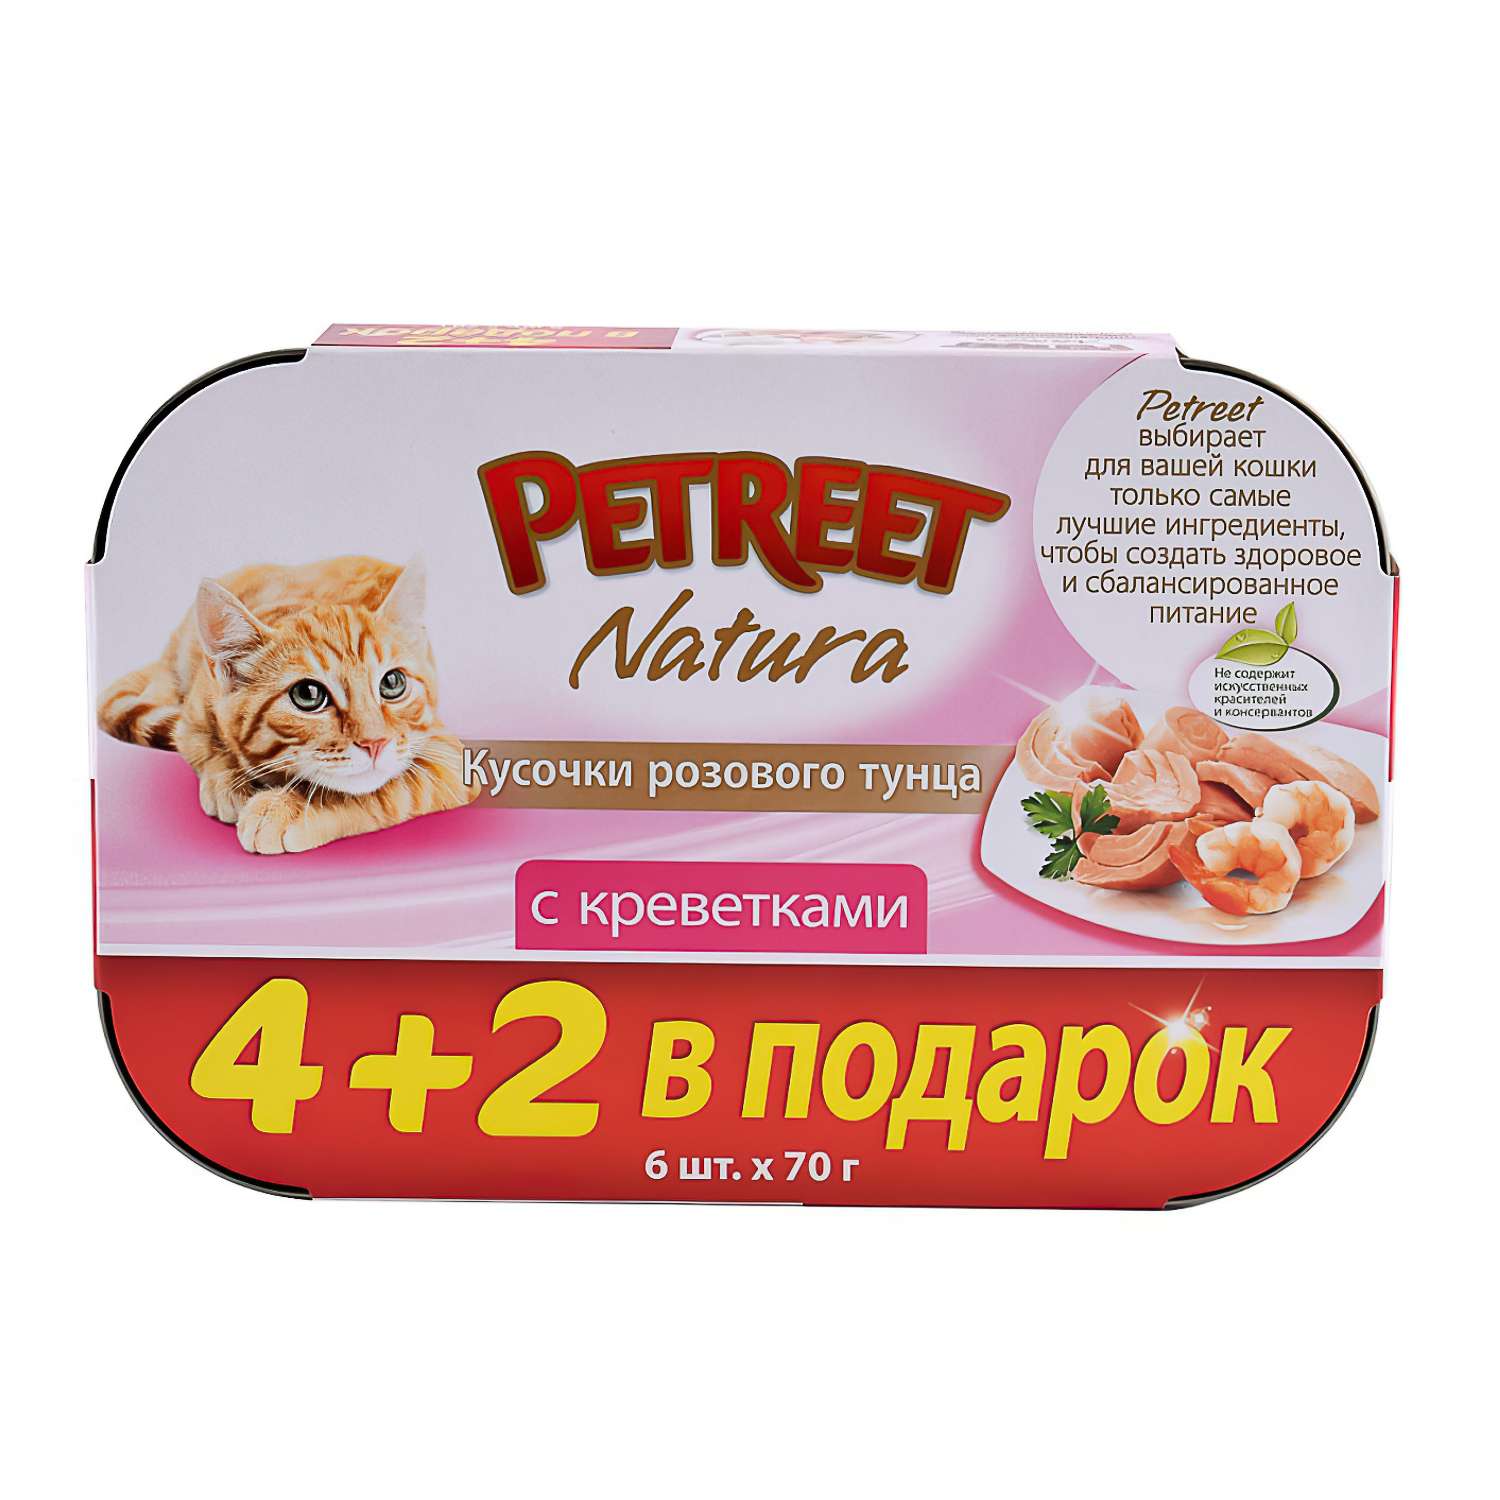 Корм влажный для кошек Petreet Multipack кусочки розового тунца с креветками - фото 2